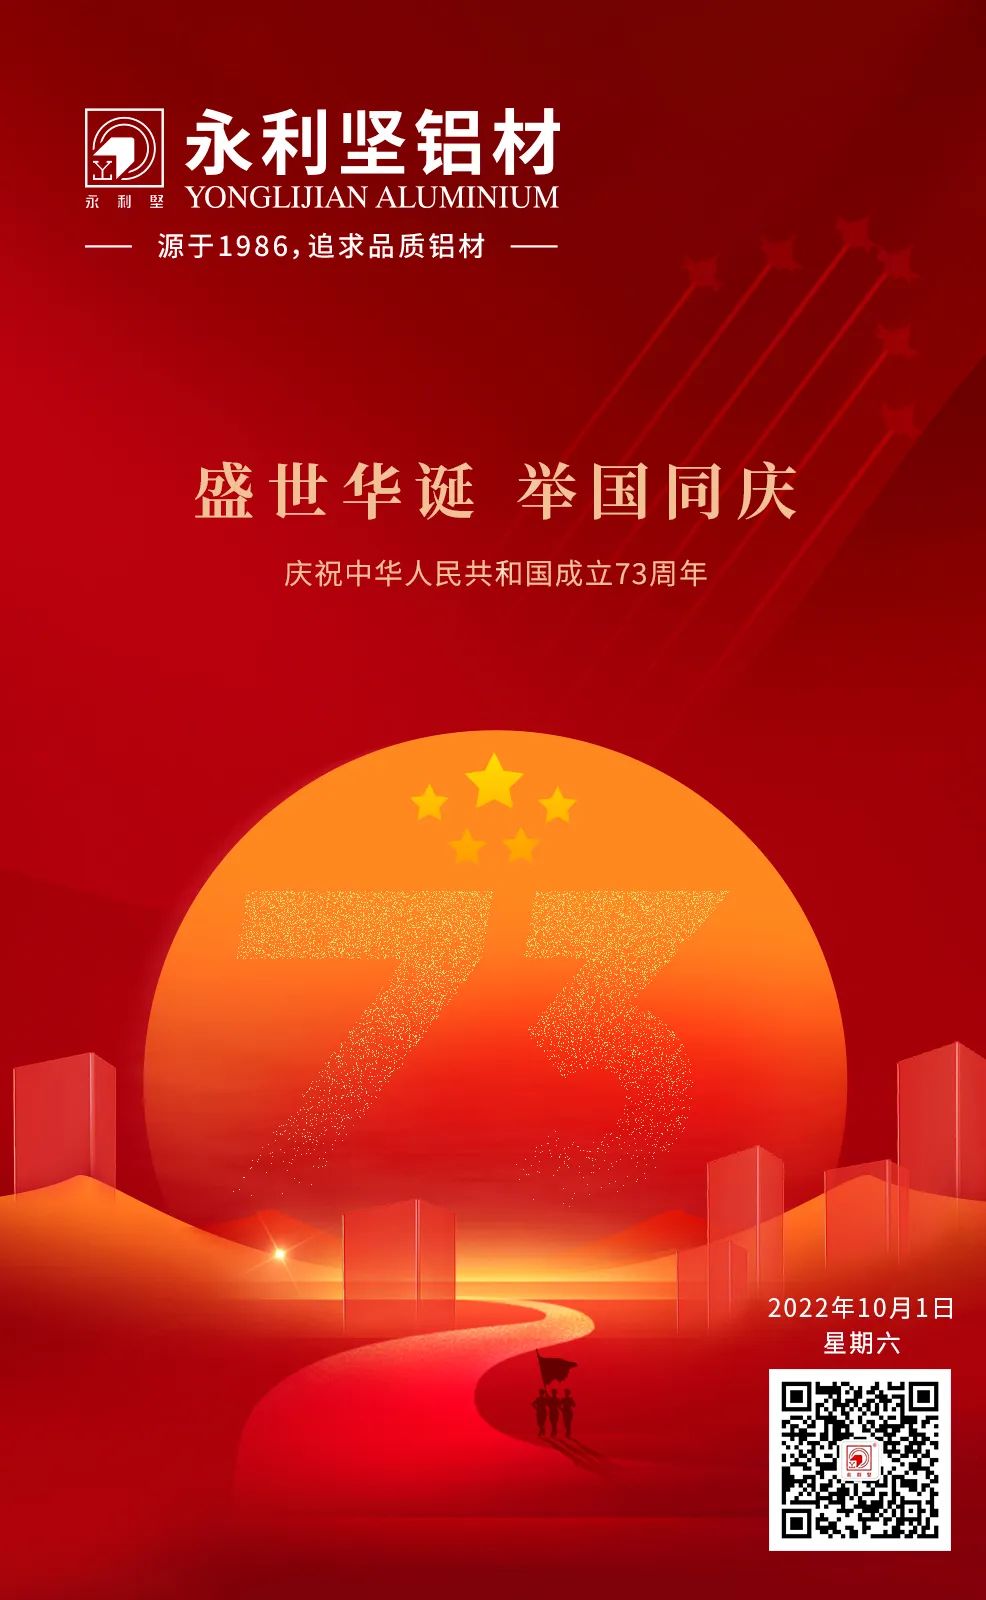 盛世华诞 举国同庆—热烈庆祝中华人民共和国成立73周年